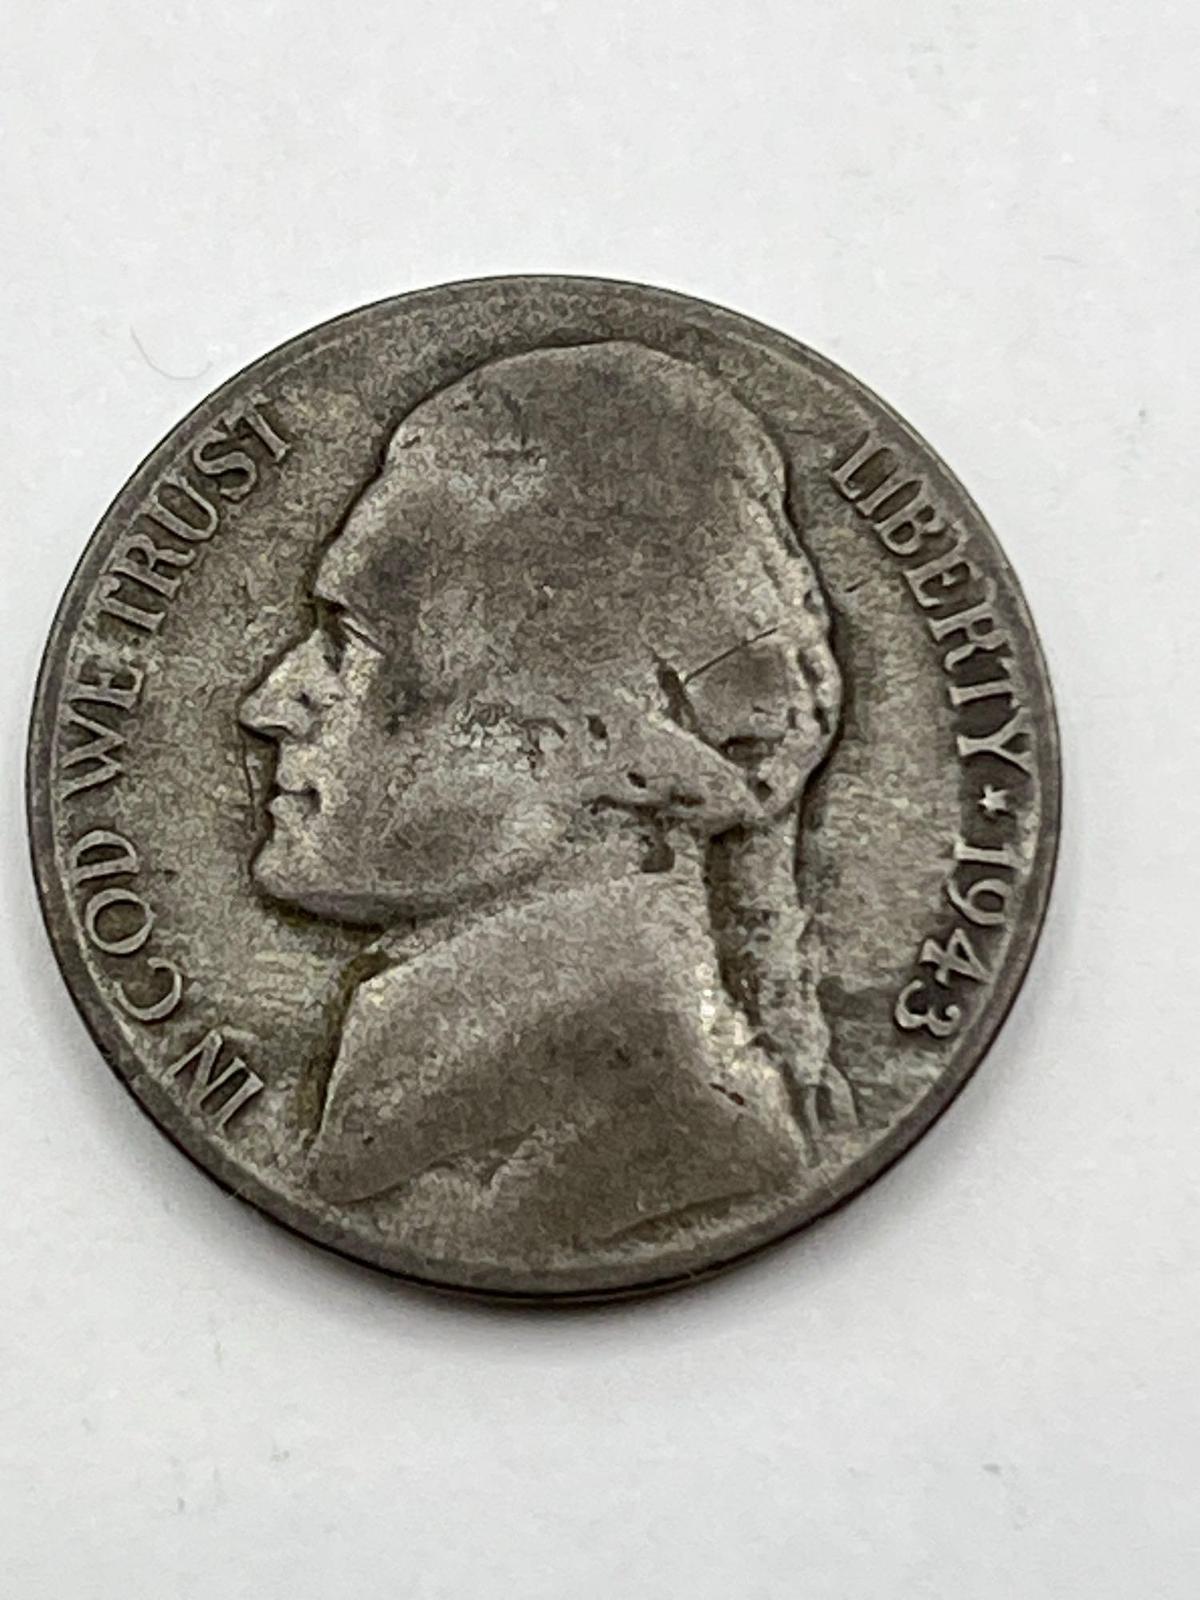 Nickel, 1943 D, "Silver"